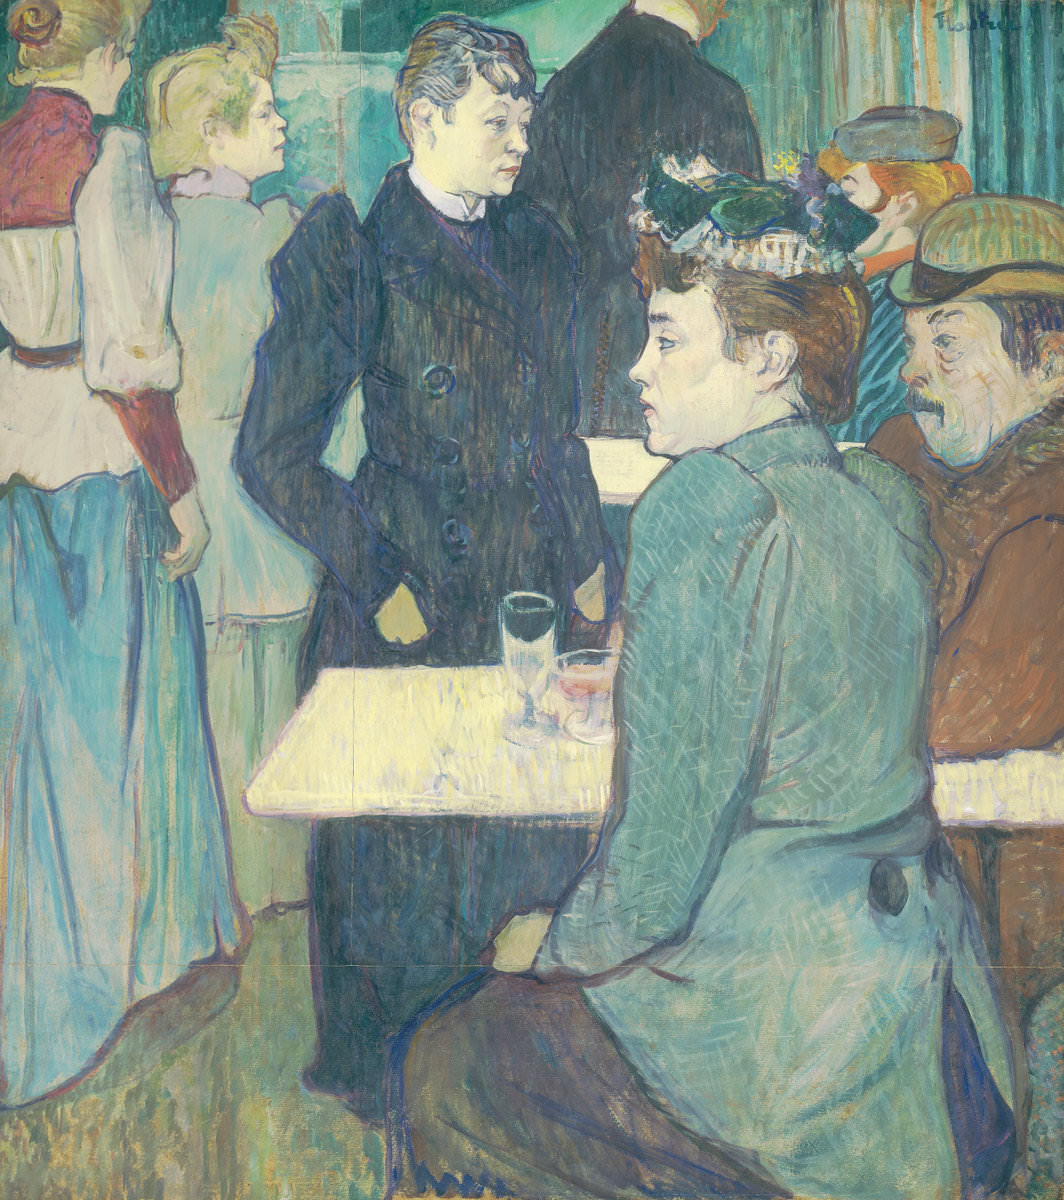 Fico. 10 -Un angolo presso il Moulin de La Galette, Henri de Toulouse-Lautrec, 1892. Galleria Nazionale d'Arte, Washington. Collezione Chester Dale.